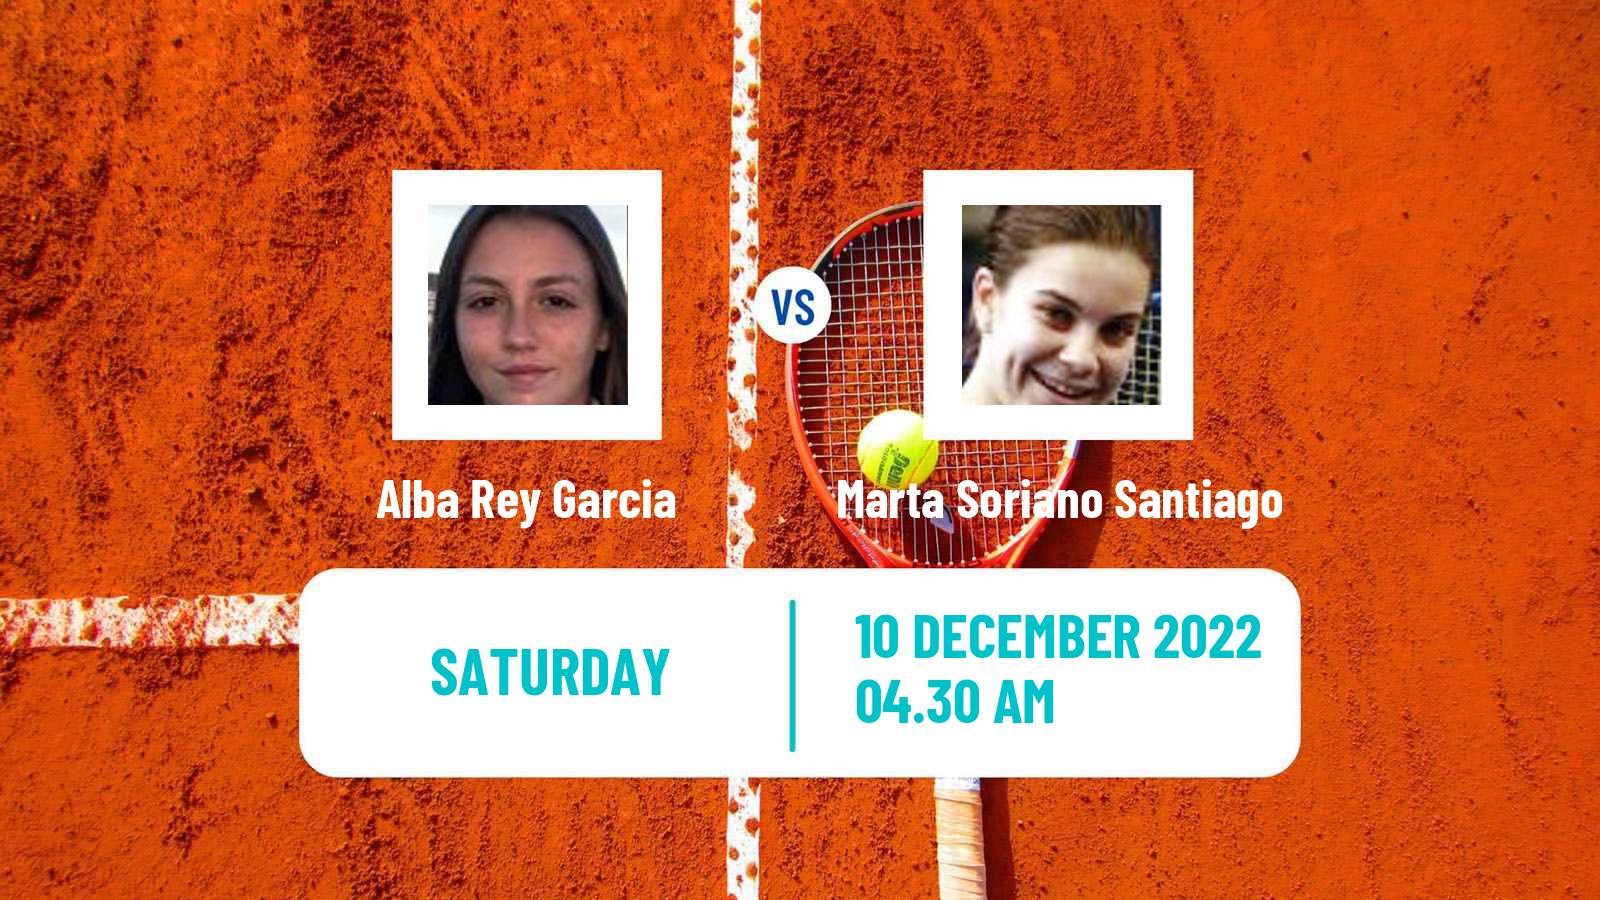 Tennis ITF Tournaments Alba Rey Garcia - Marta Soriano Santiago